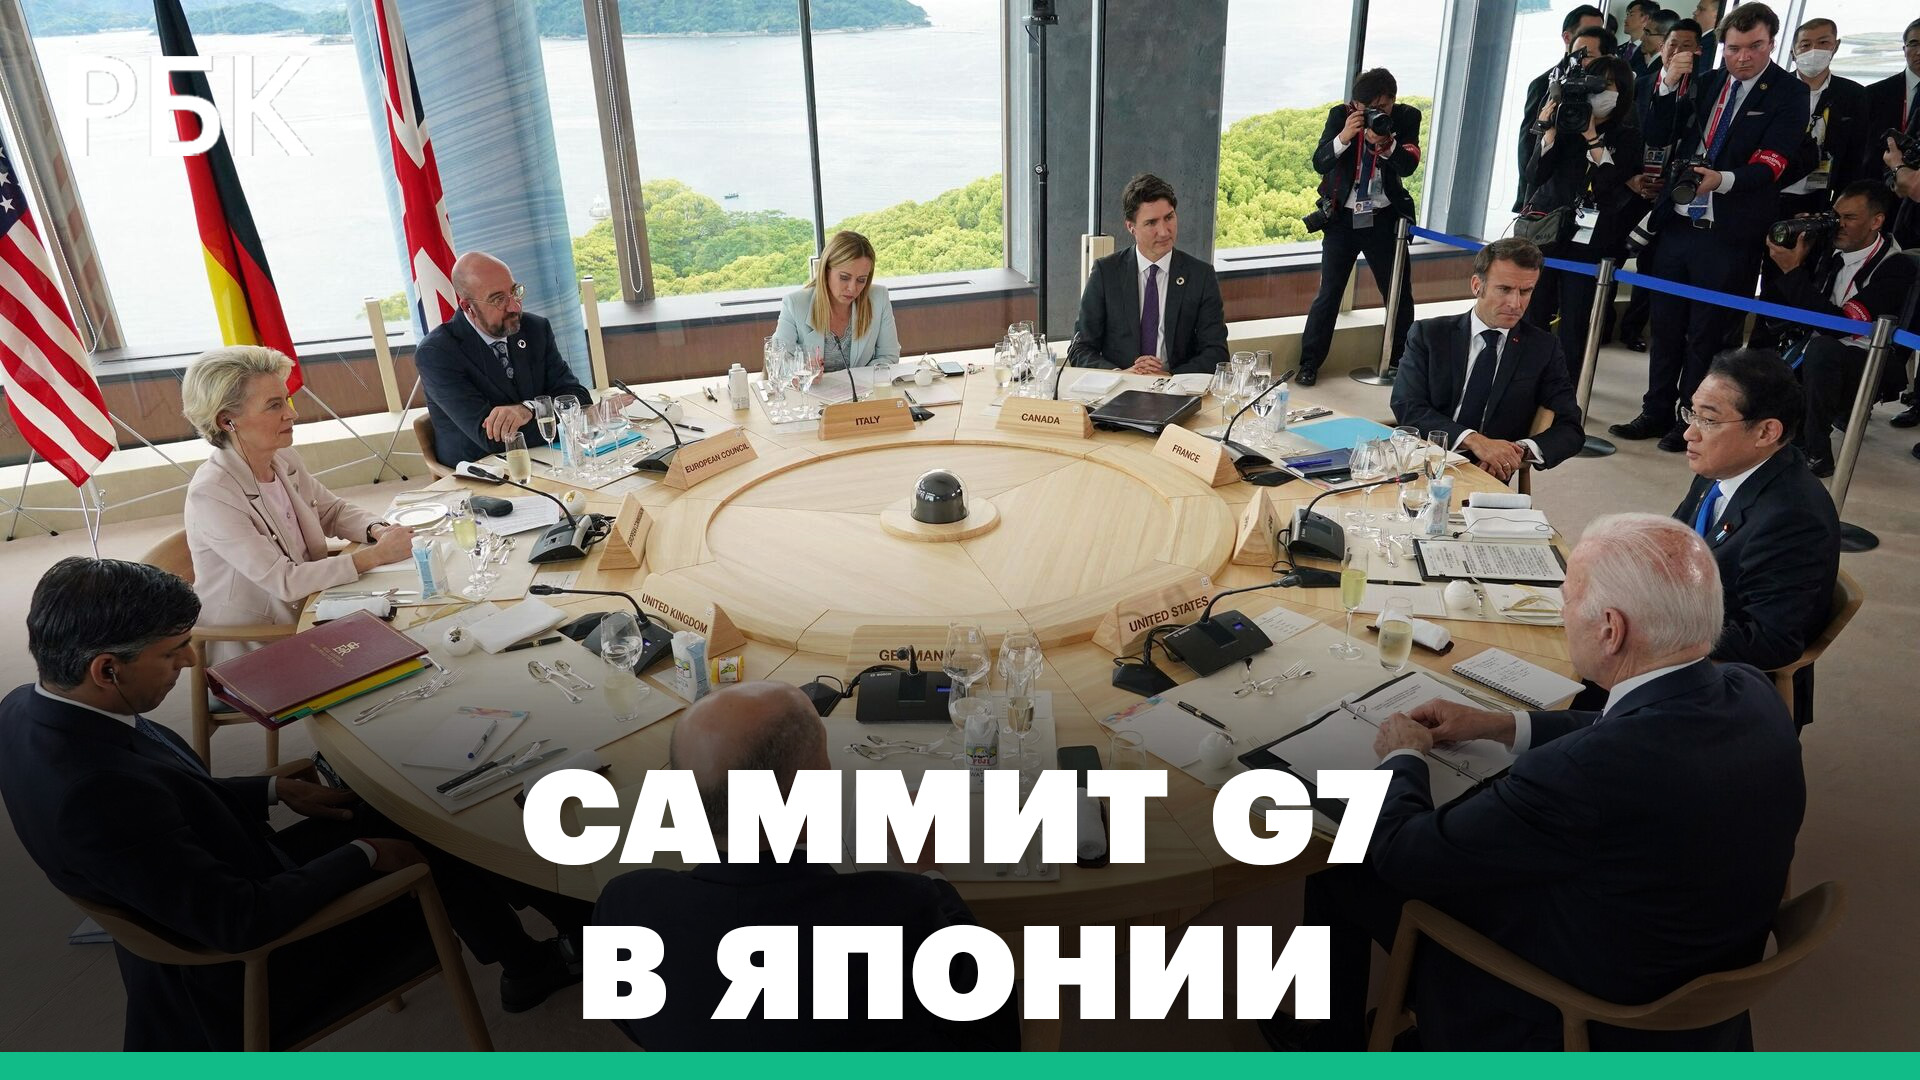 Итоги первого дня саммита G7 в Японии